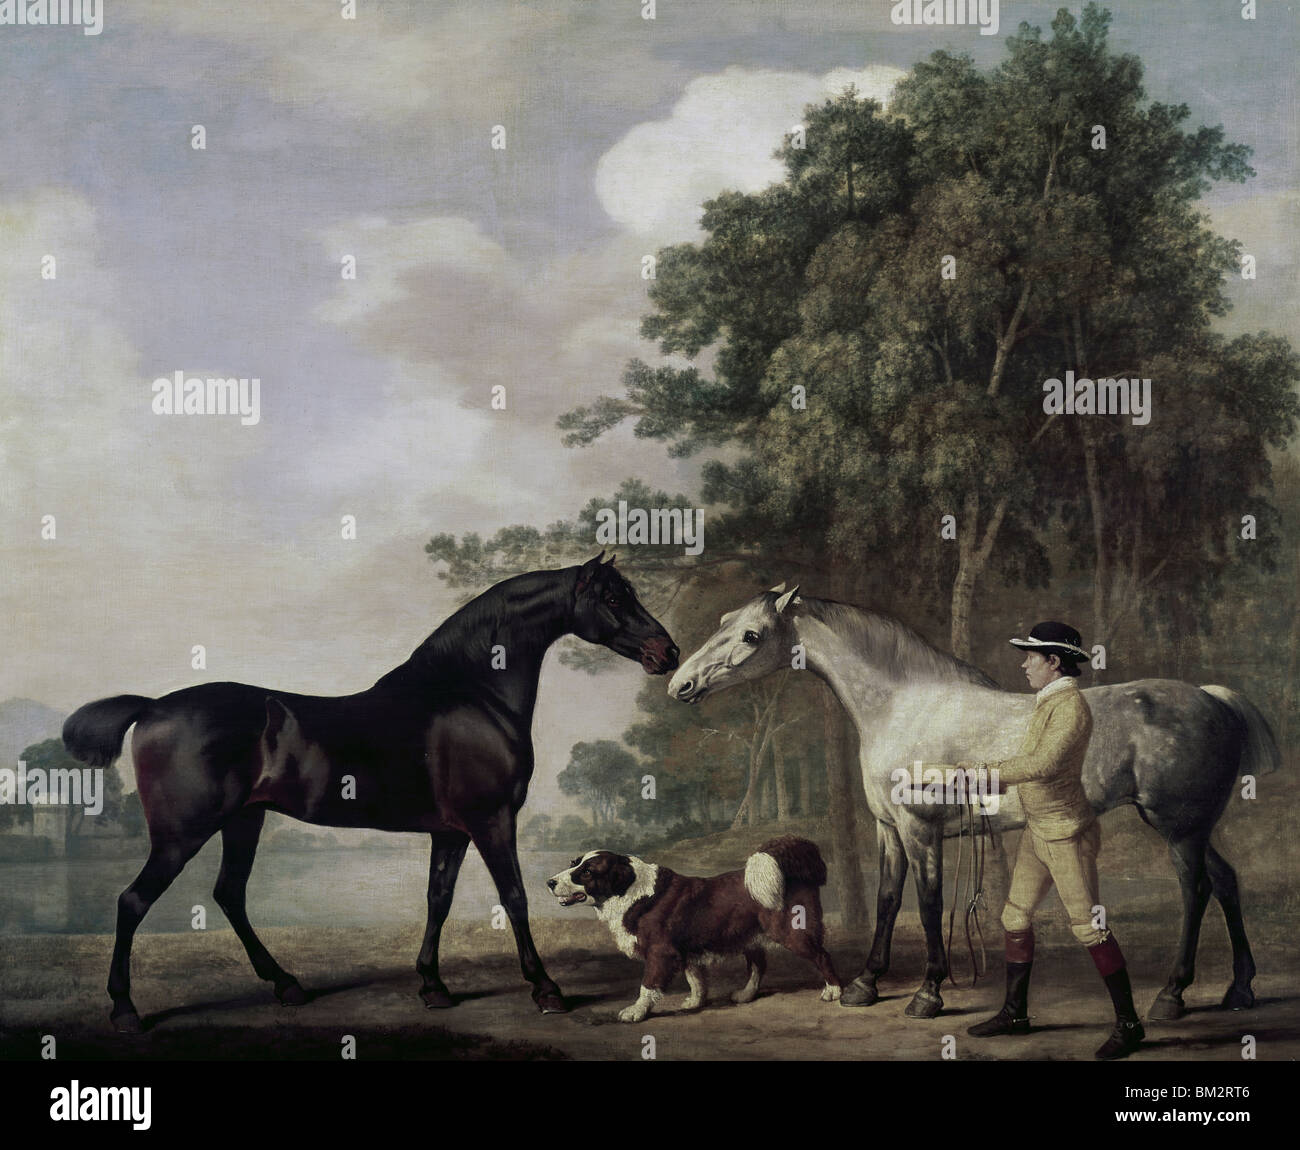 Garçon avec deux chevaux nad chien, image peinte Banque D'Images